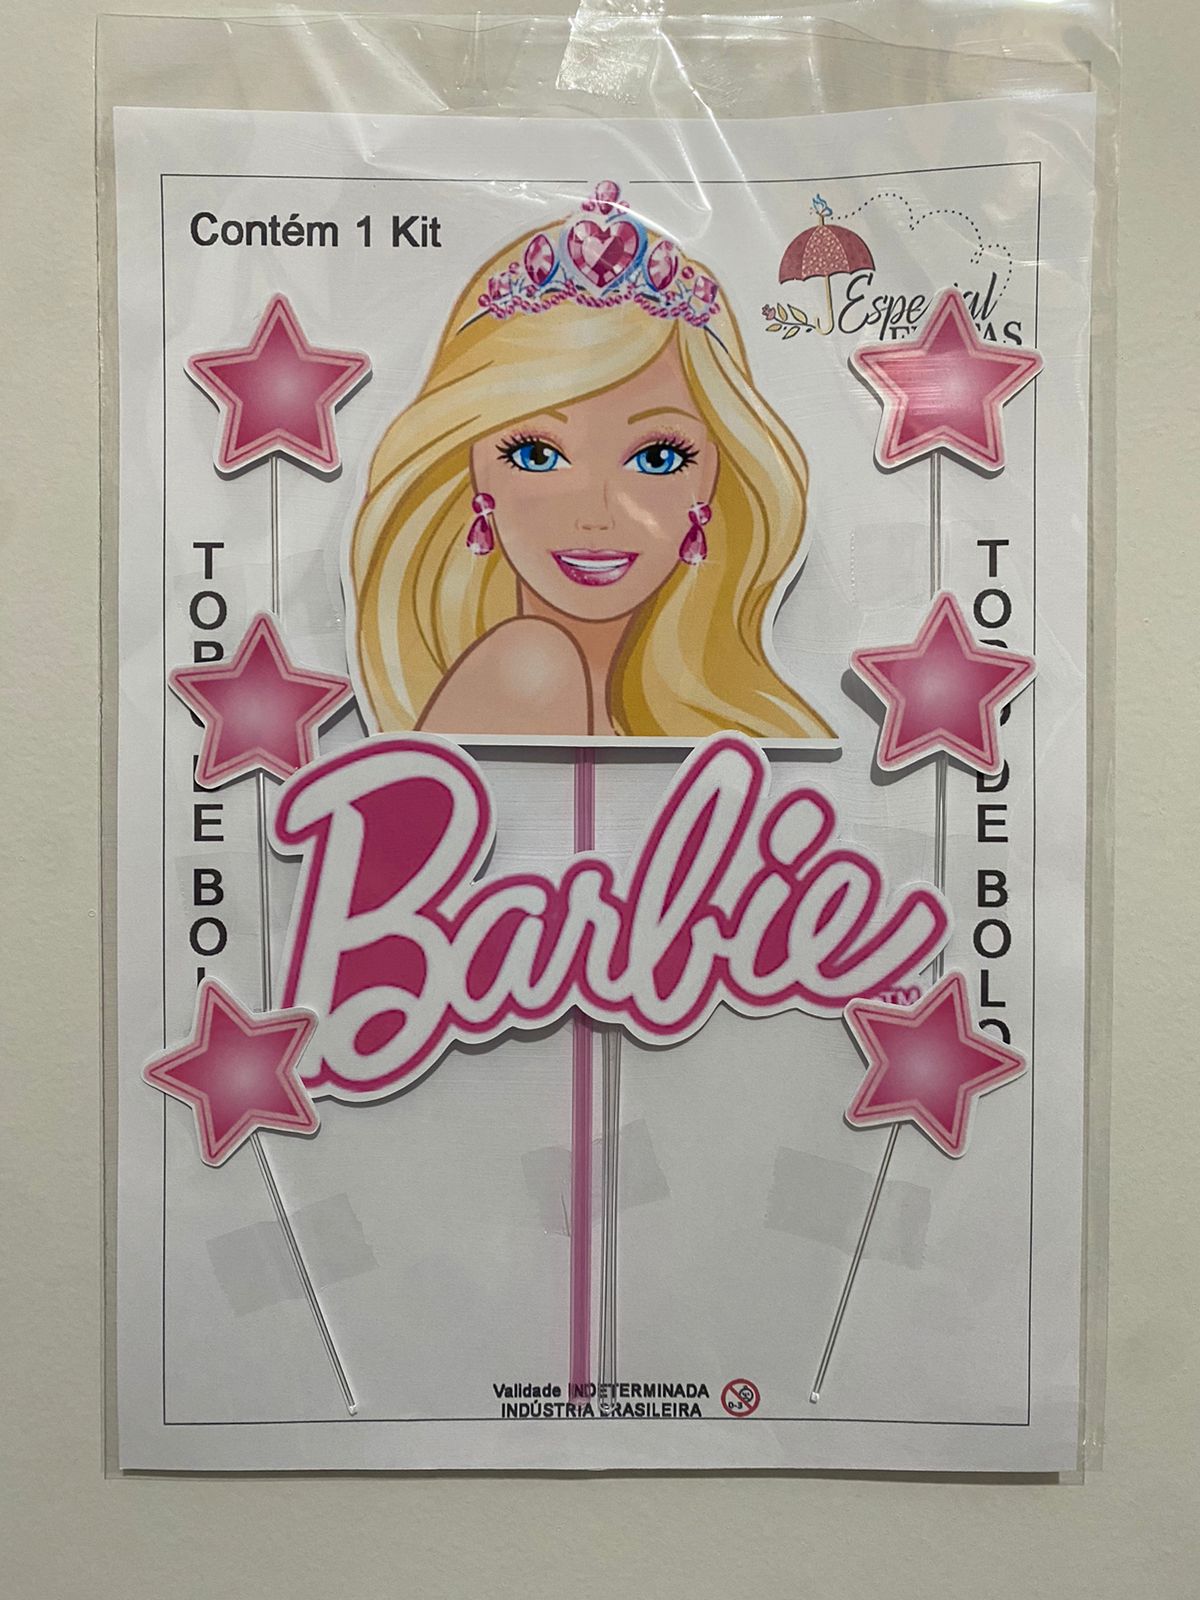 Top 7 - Melhores jogos da Barbie